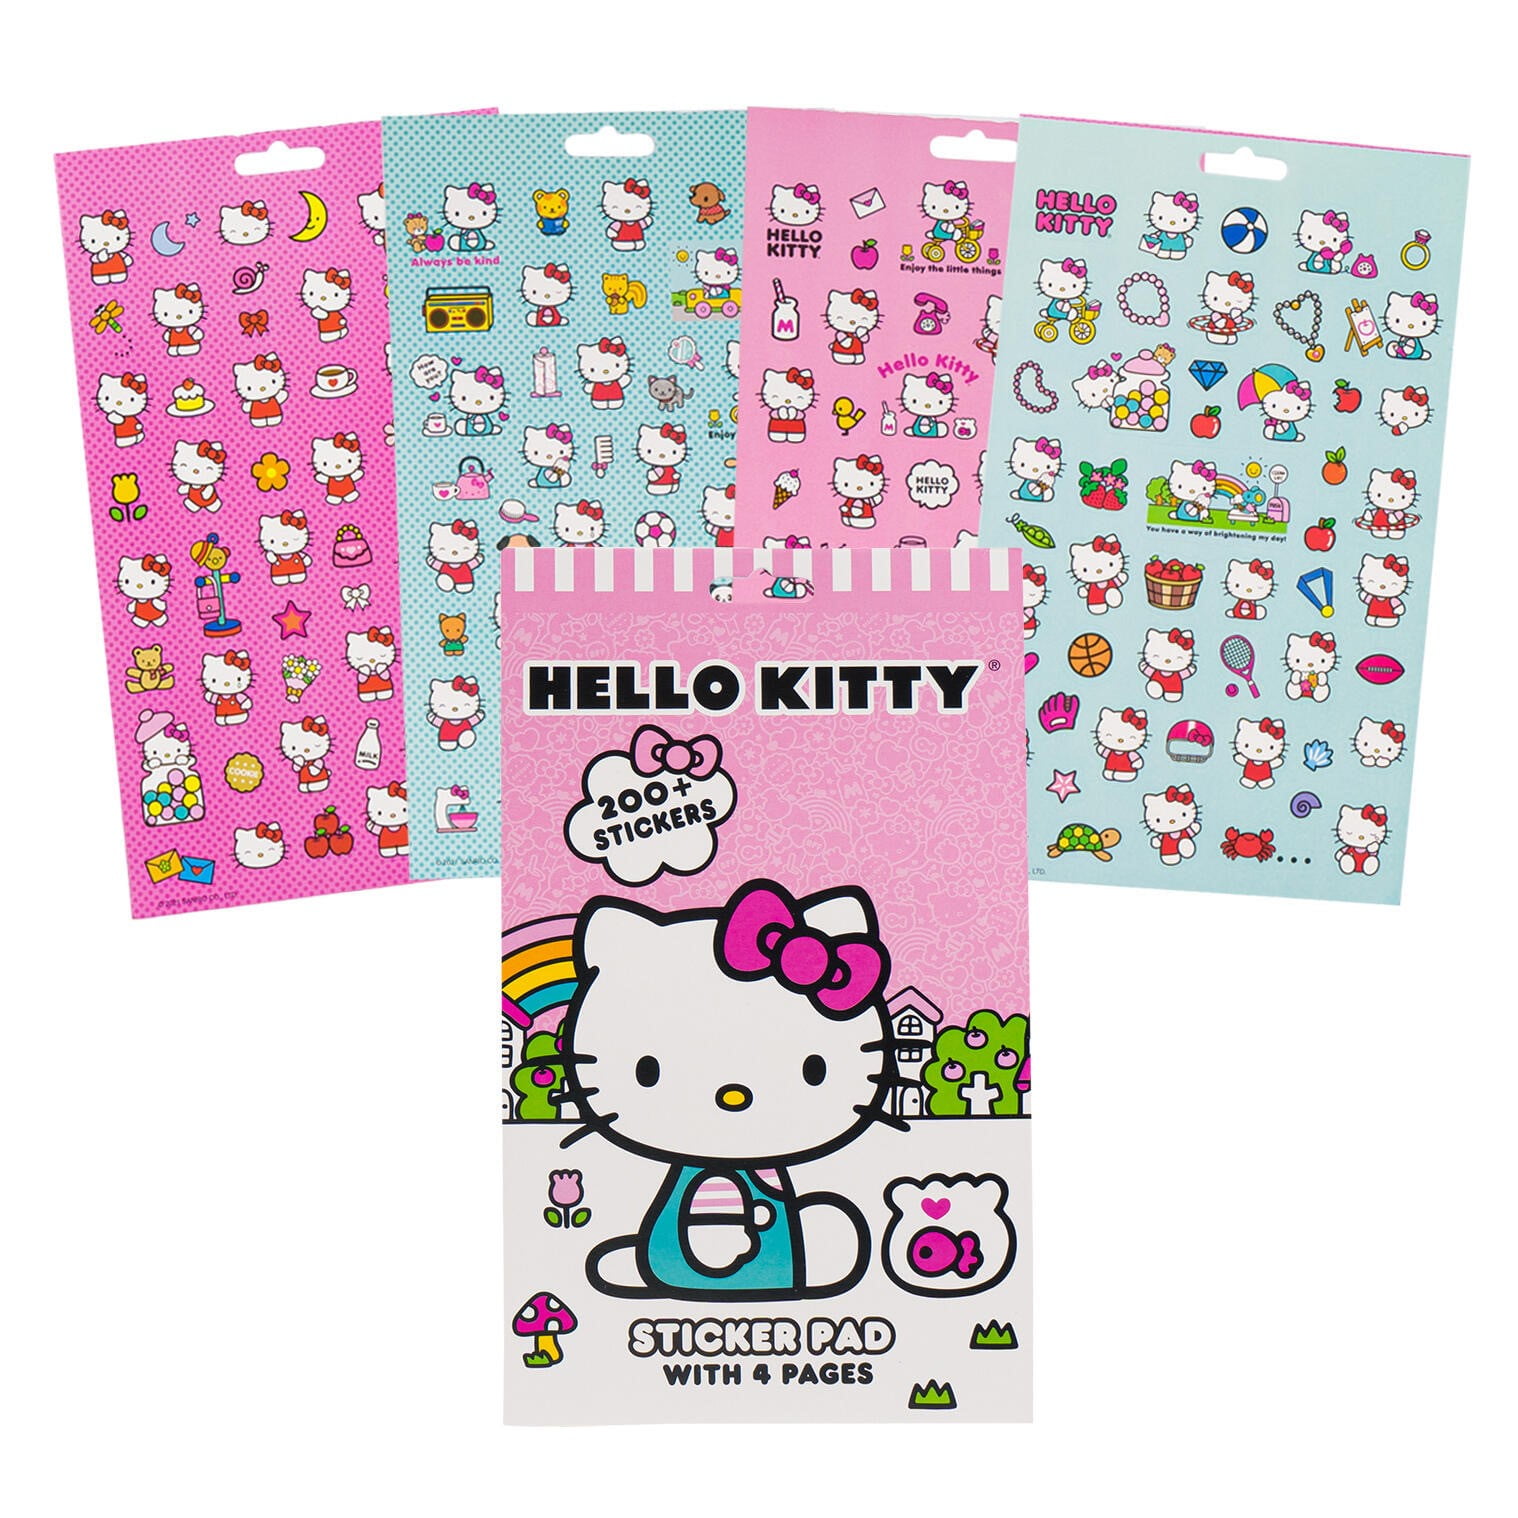 NEW Hello Kitty Mini Sticker Book 146 Stickers 8 Pages 2009 Sanrio